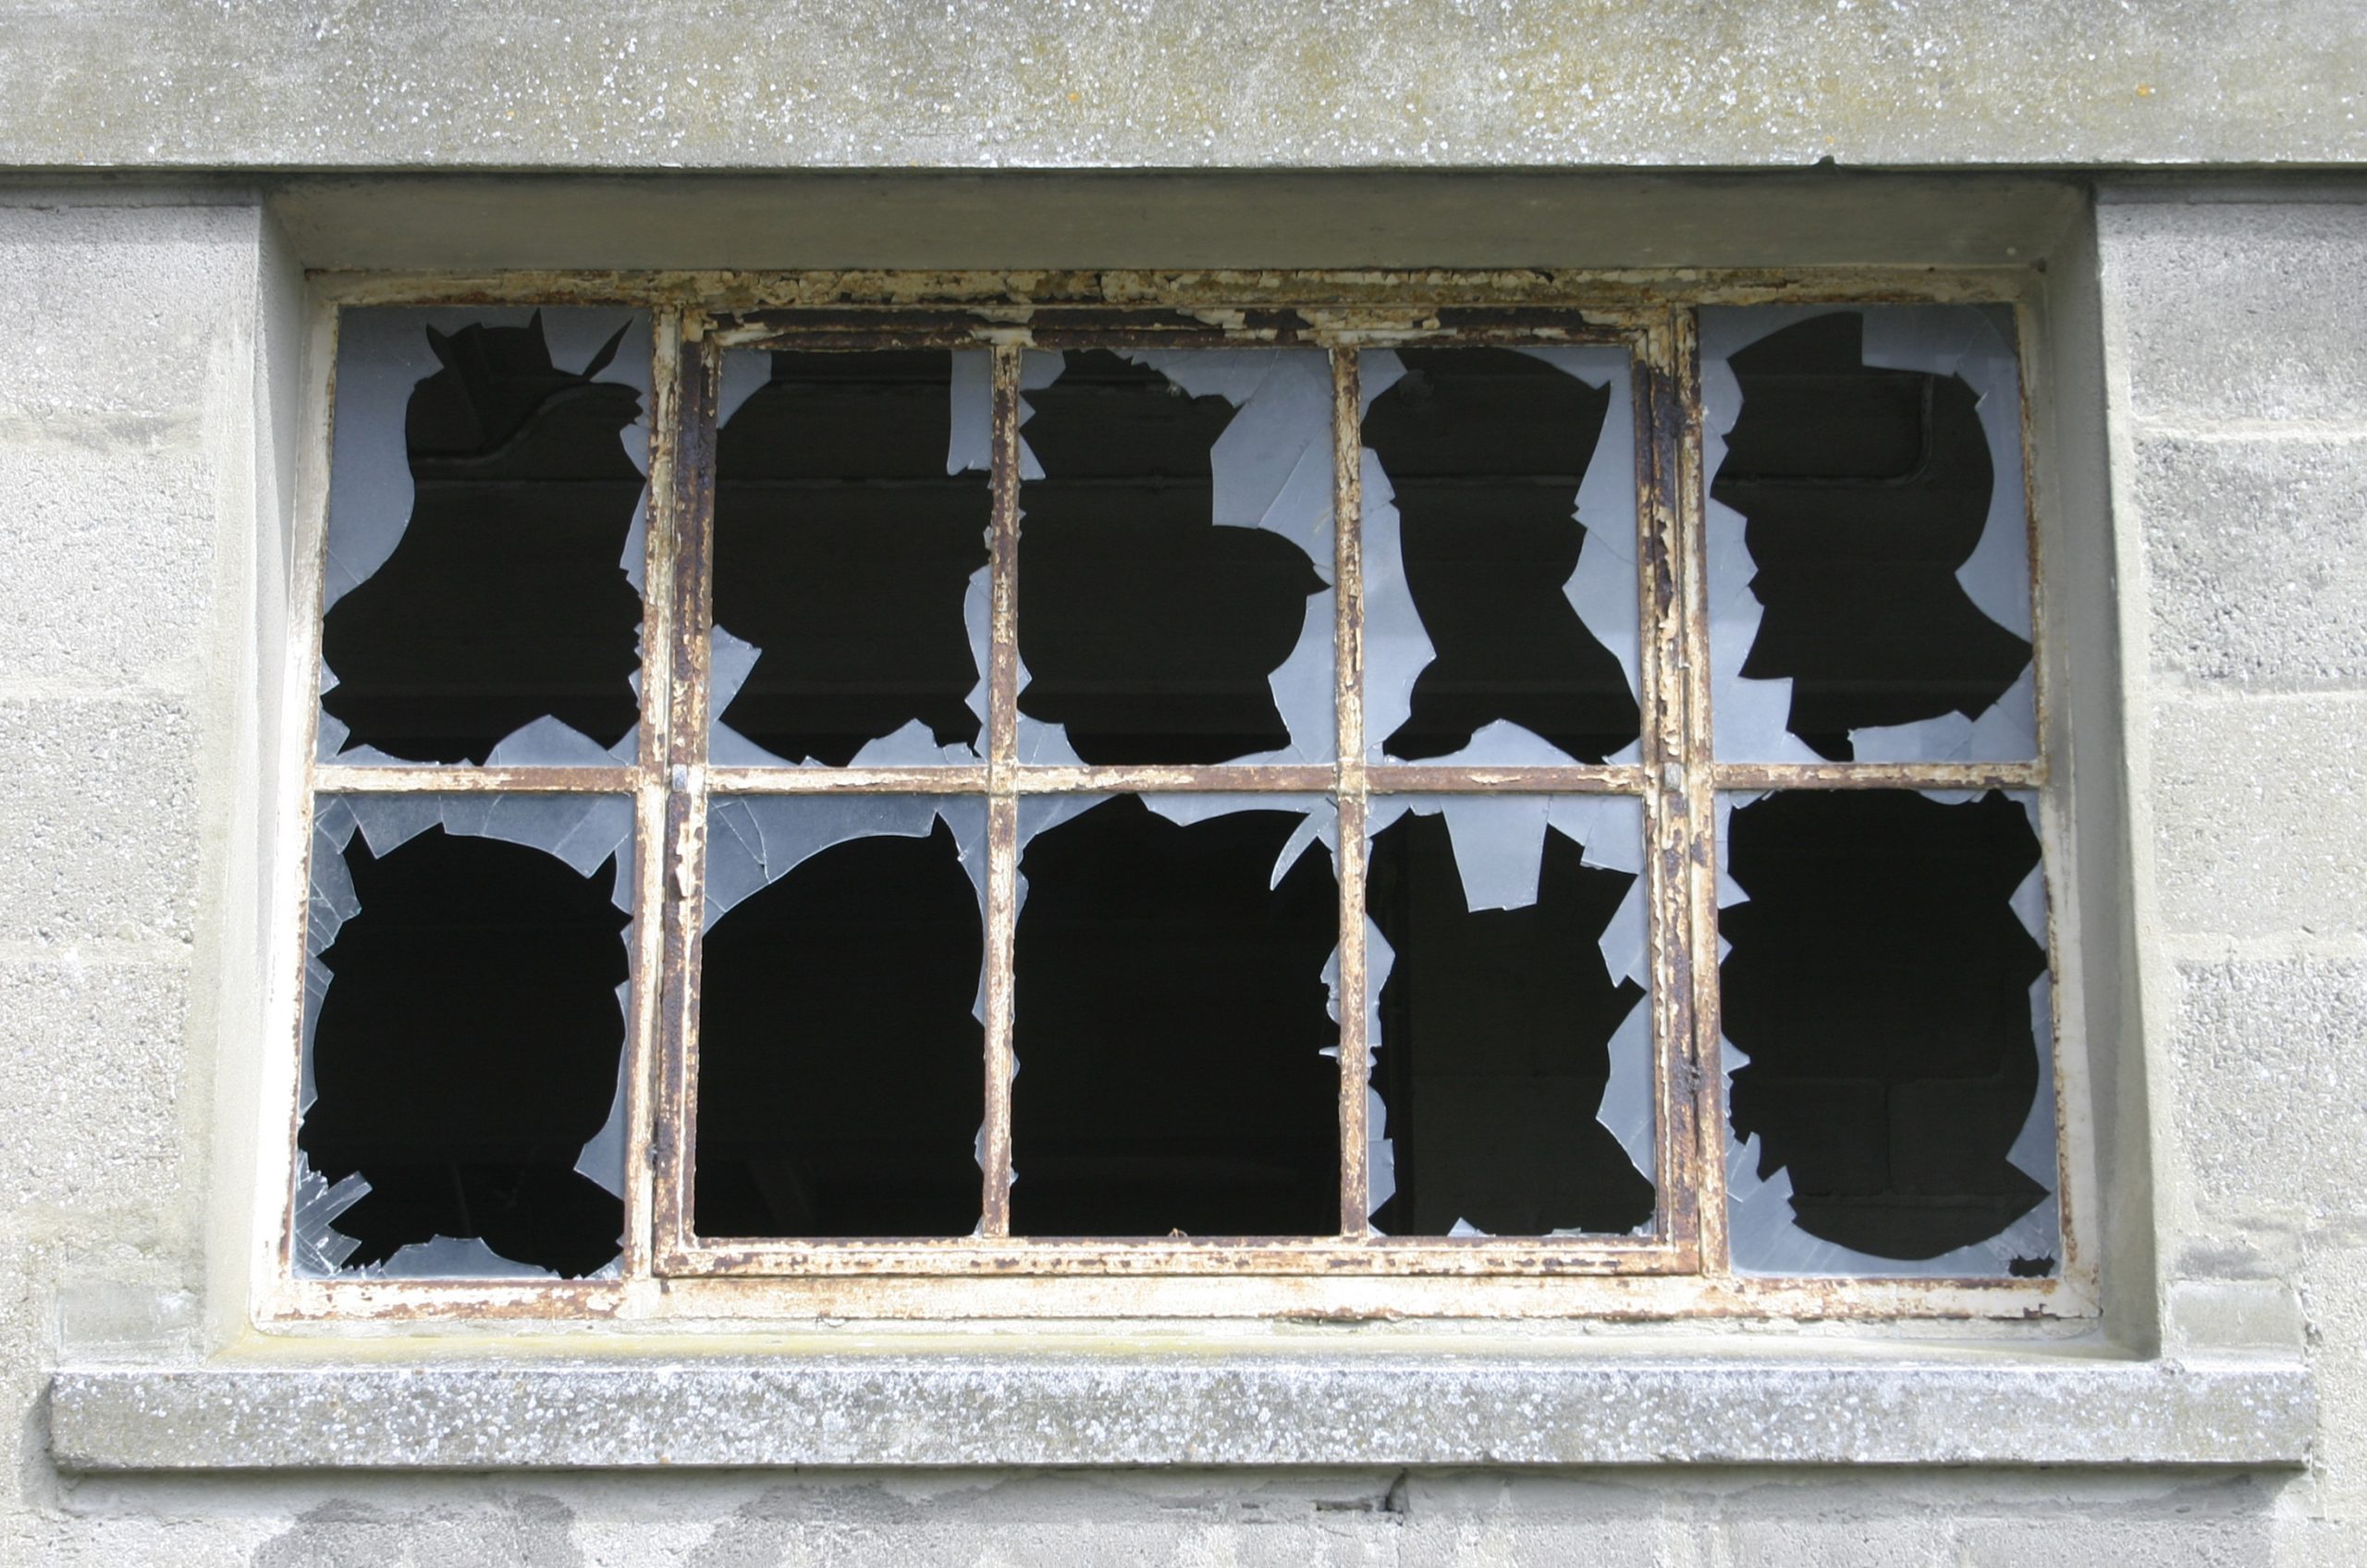 Broken windows on cement building